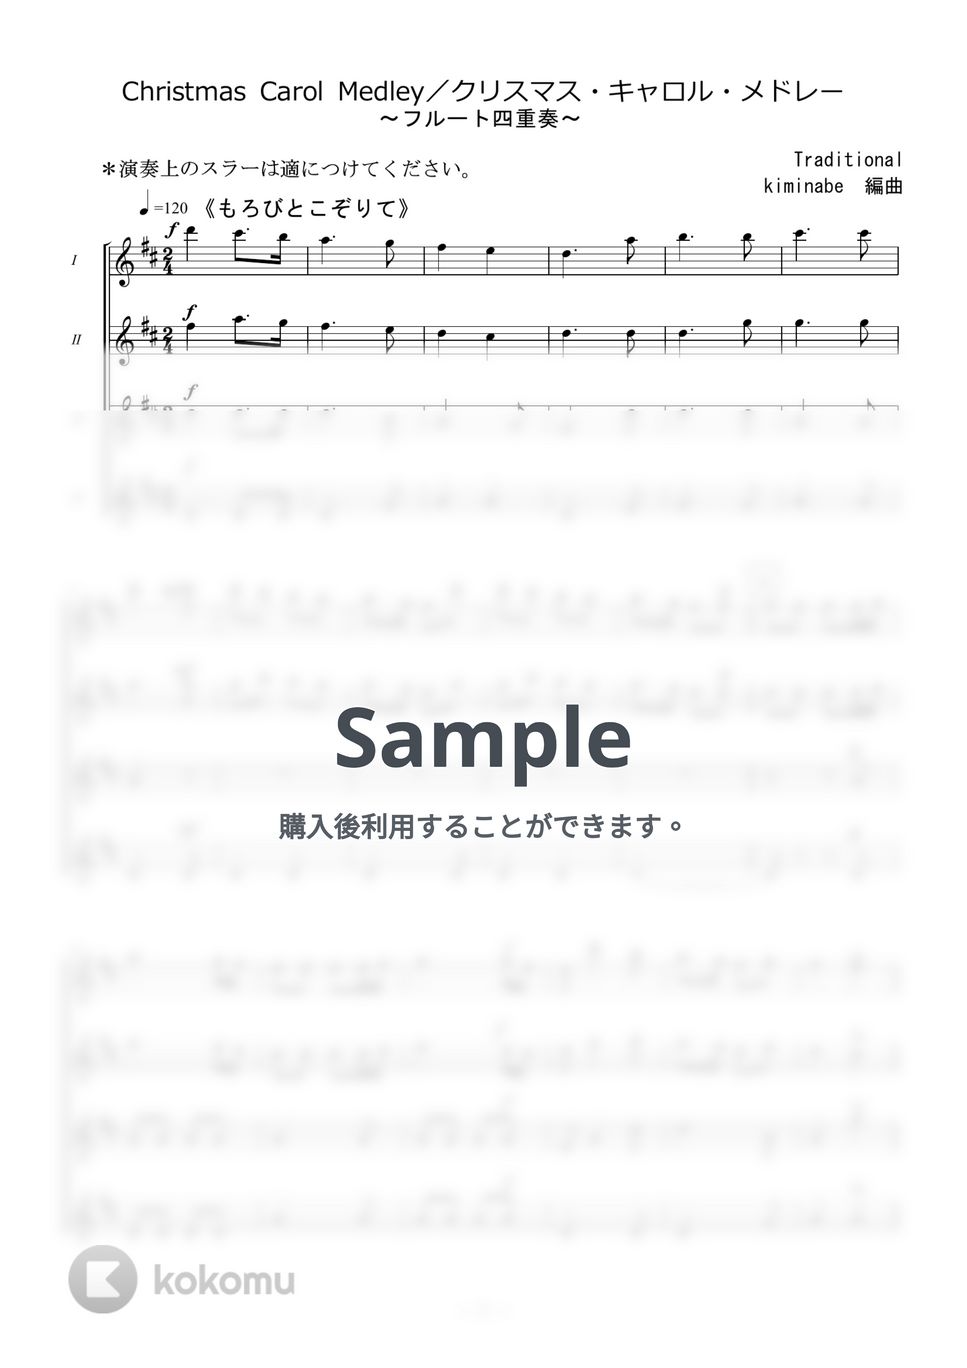 讃美歌 - Christmas Carol Medley／クリスマス・キャロル・メドレー (フルート四重奏) by kiminabe